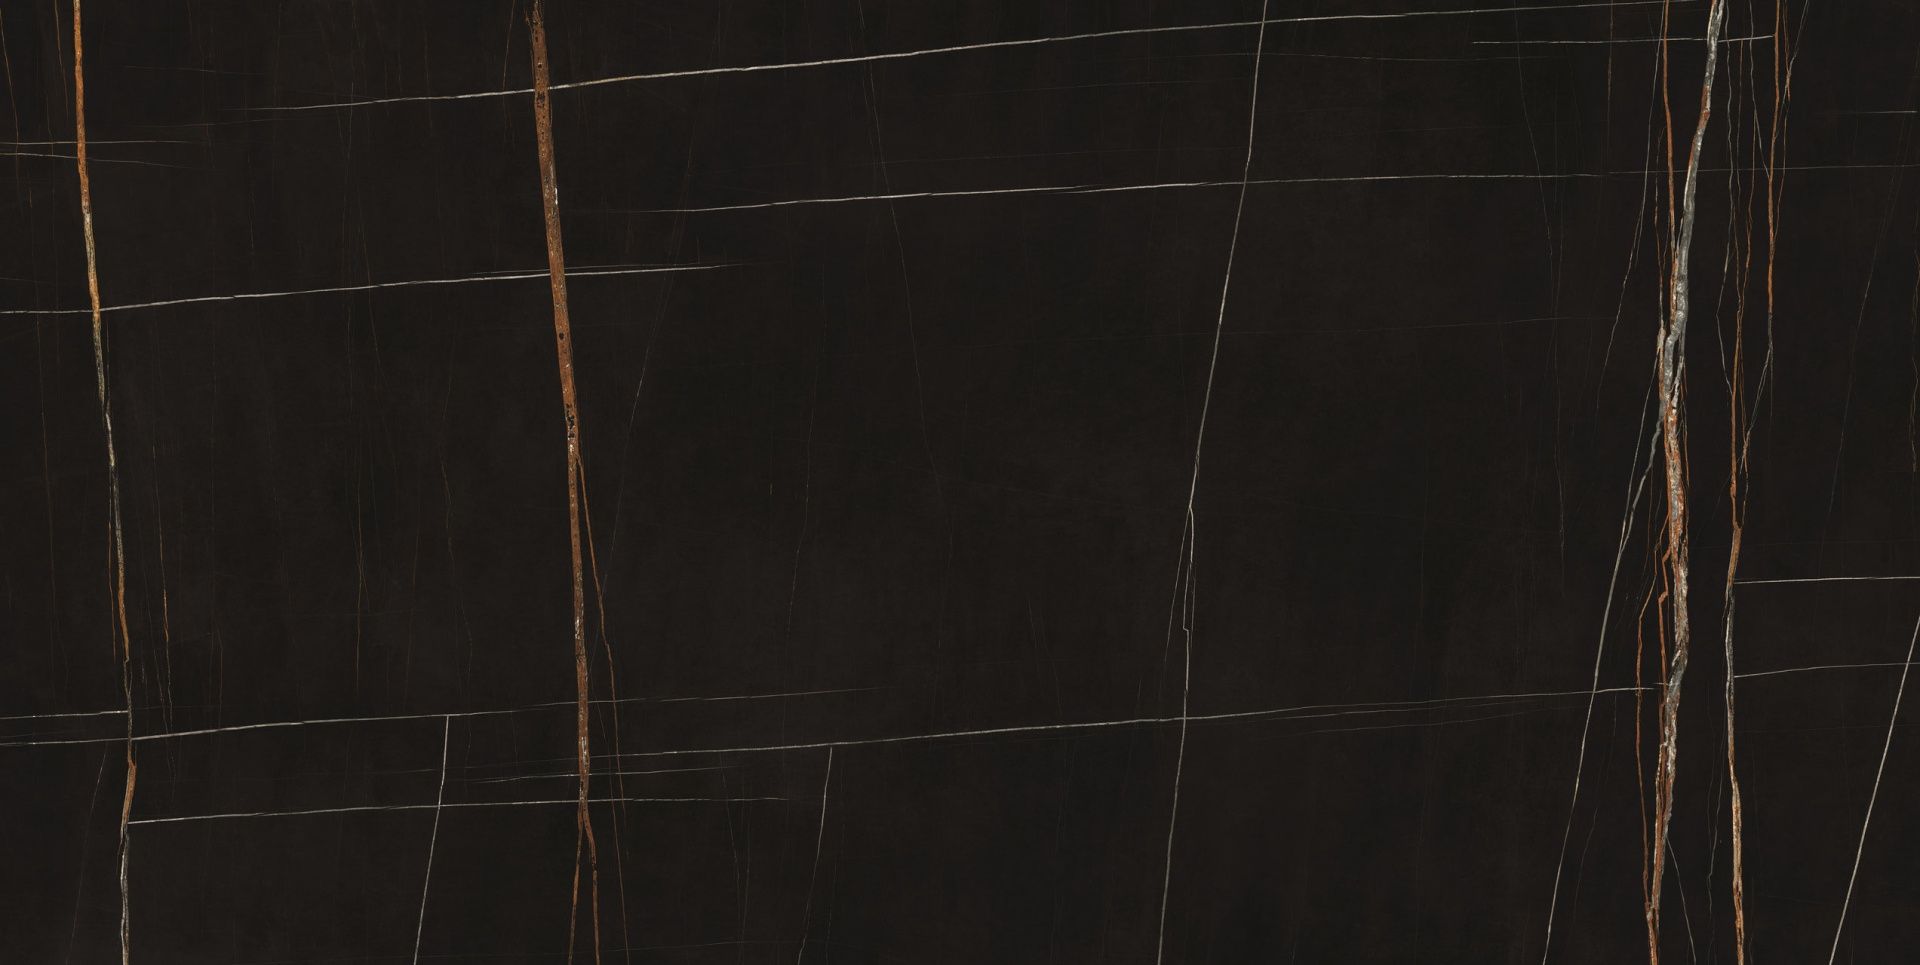 Плитка из керамогранита MARMI SGF MM SHN LUC SAHARA NOIR LUCIDATO для стен и пола, универсально 150x300 6 мм